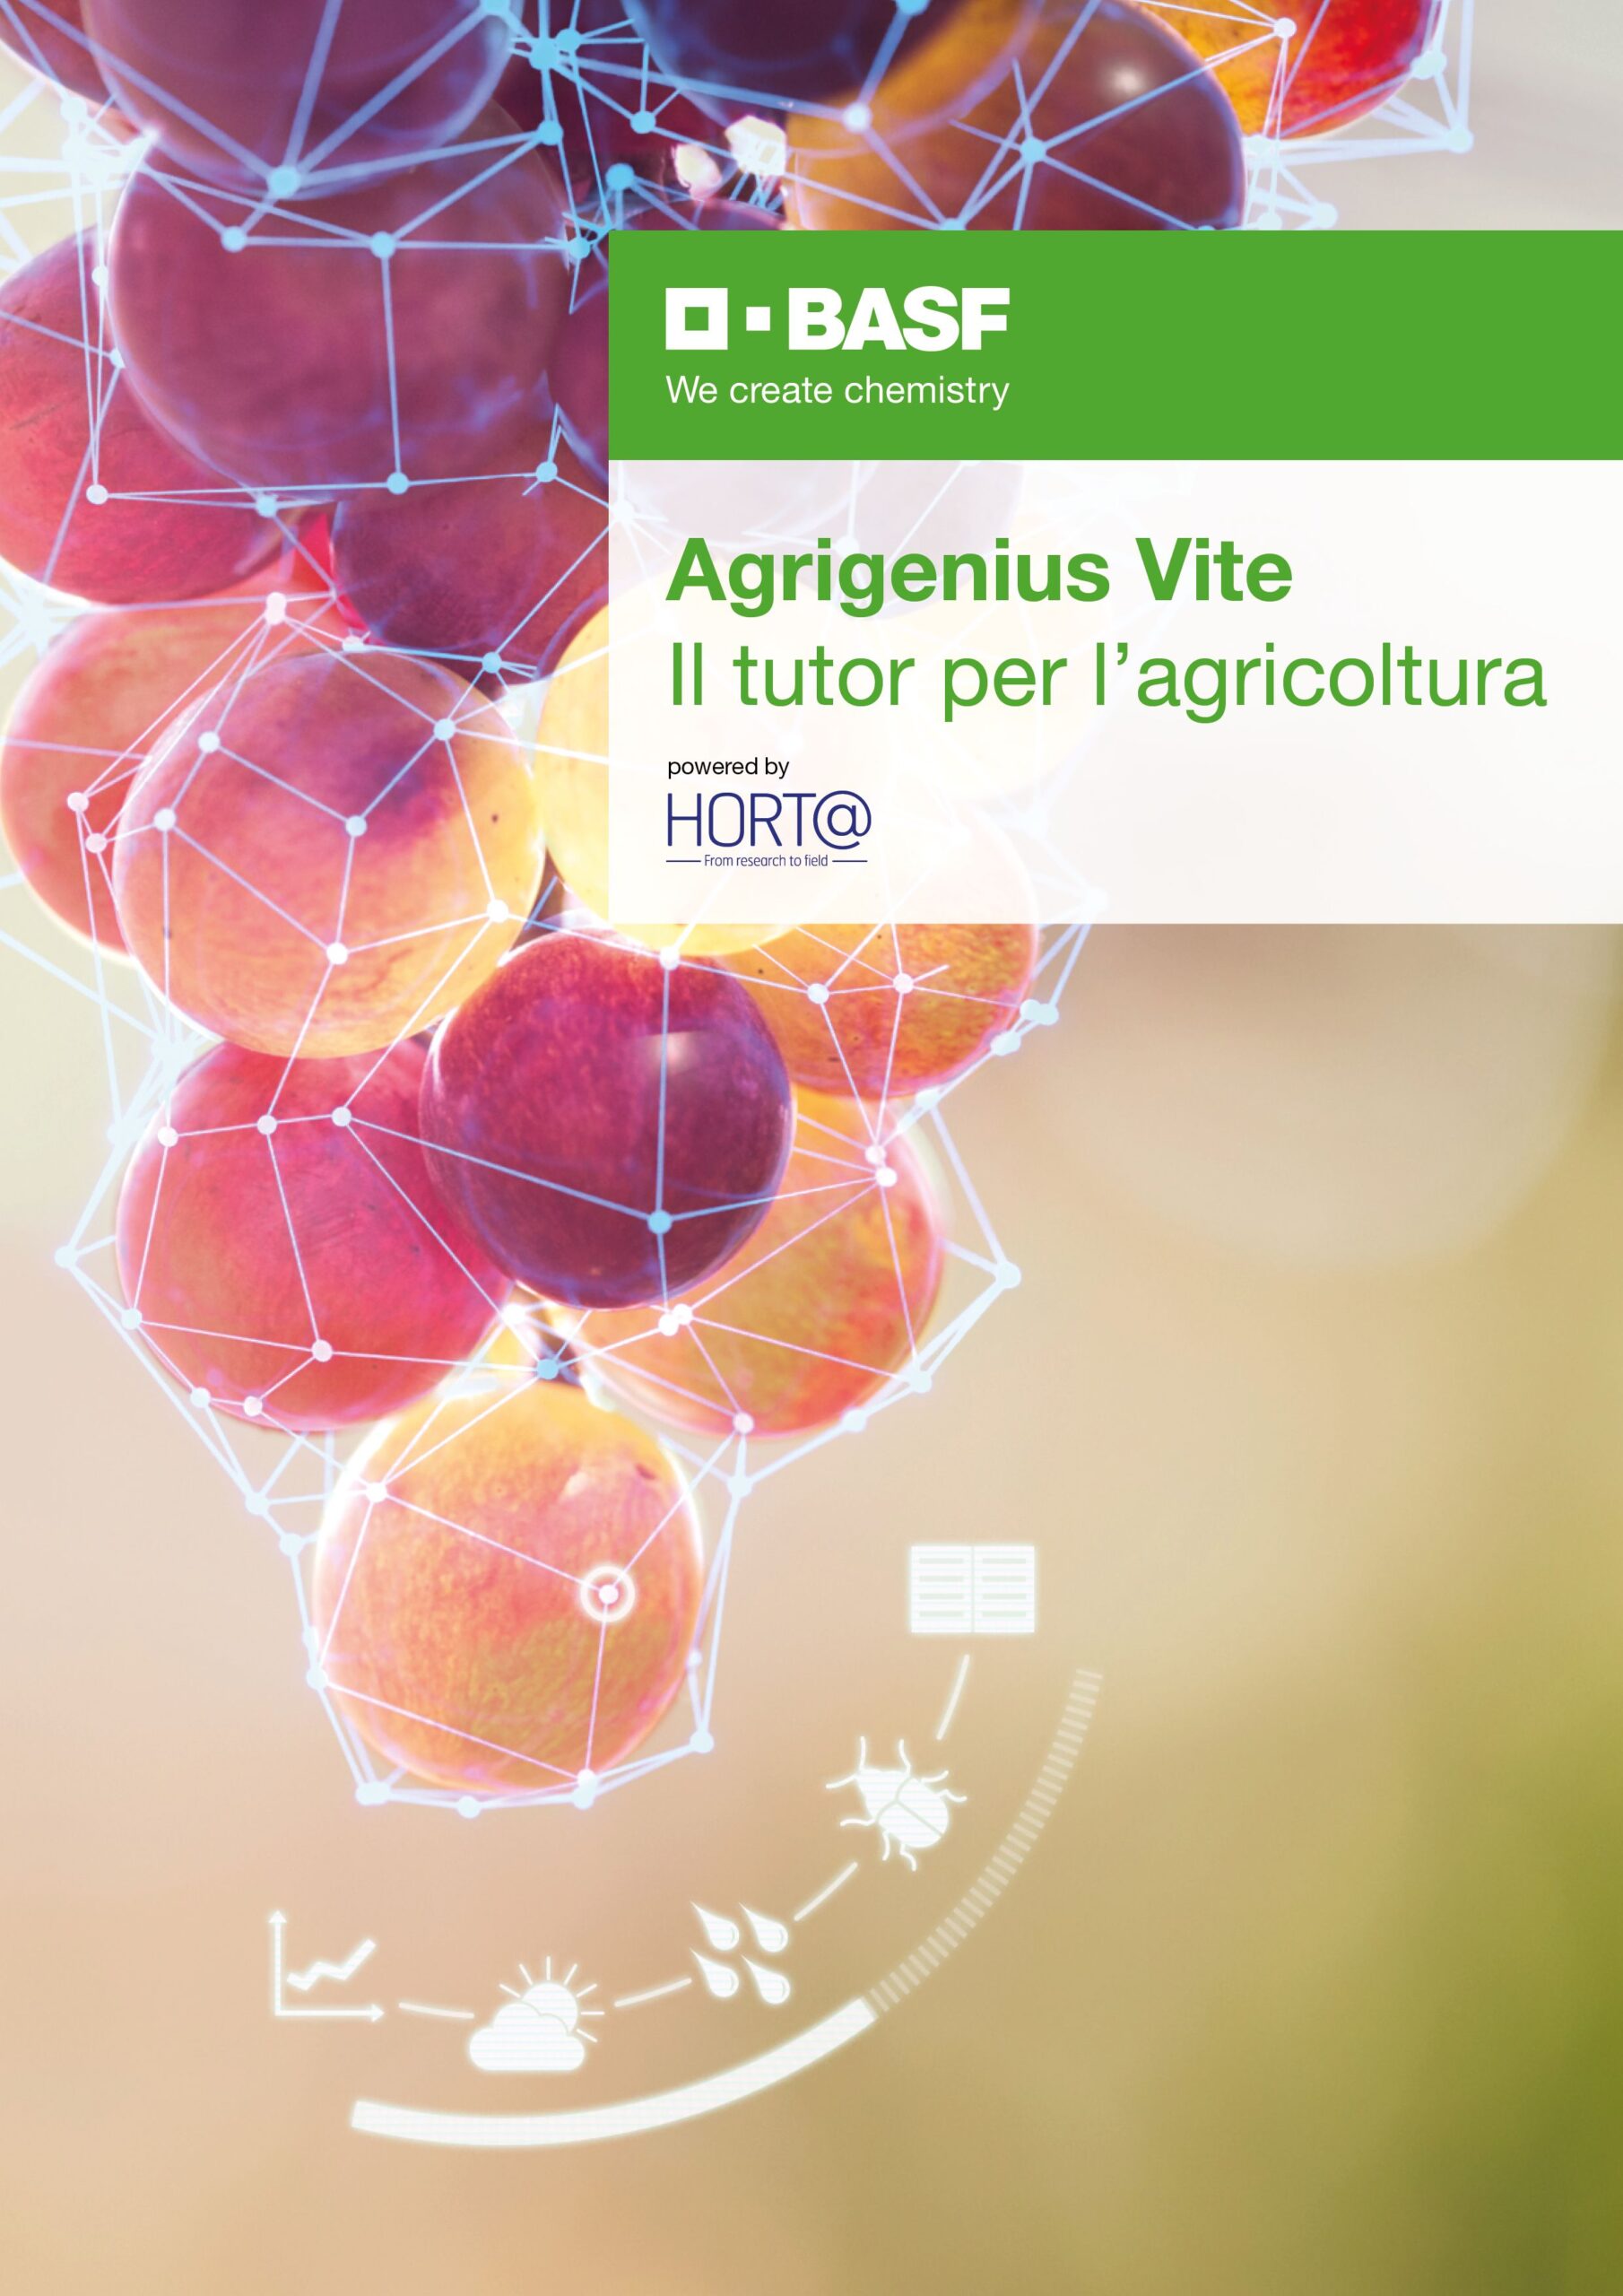 La divisione Agricultural Solutions di BASF investe sull’Italia per le soluzioni digitali dedicate al comparto vitivinicolo